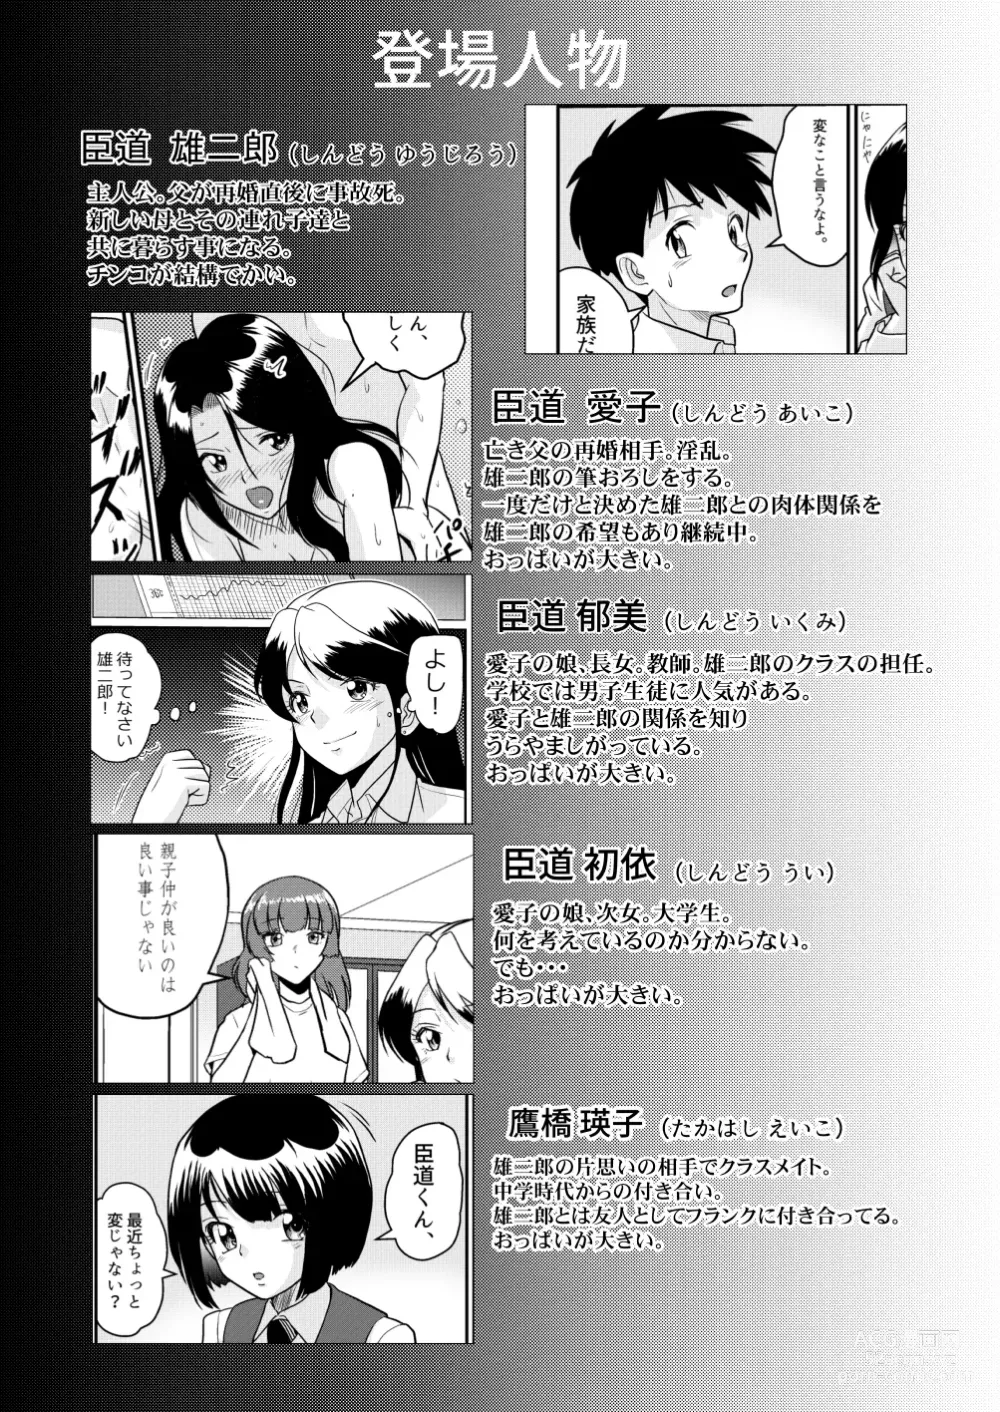 Page 2 of doujinshi Shin Kazoku 2 Ima wa Sensei nante Yobanaide...